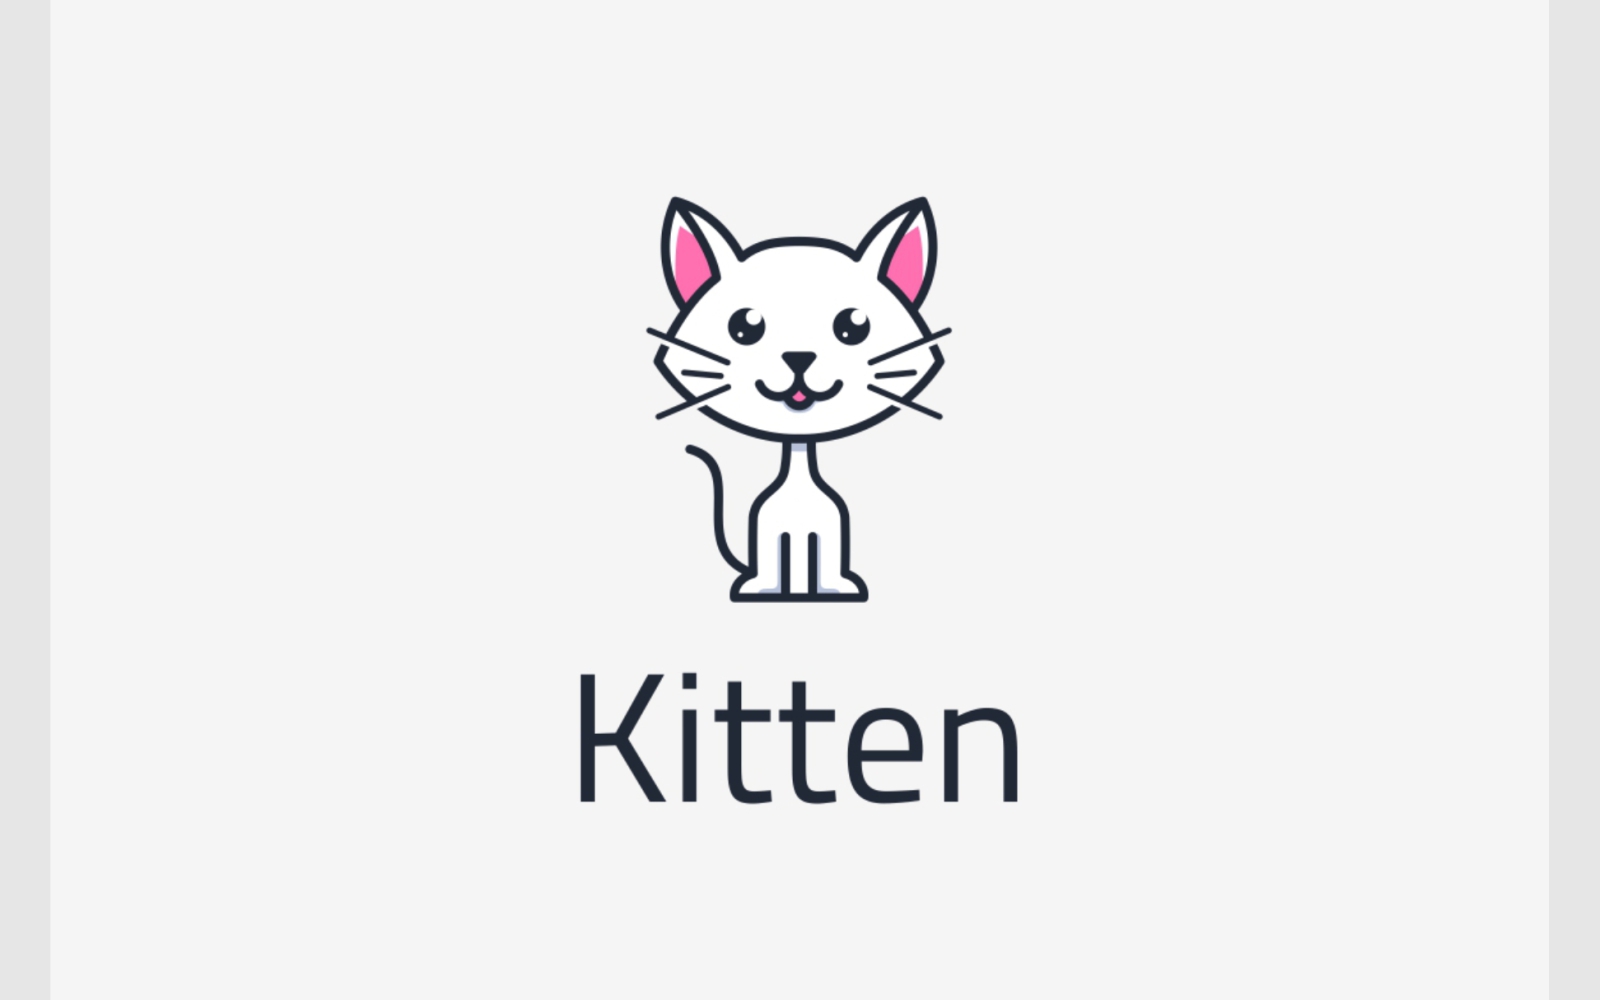 Cute Cat Kitten Mascot Cartoon Logo